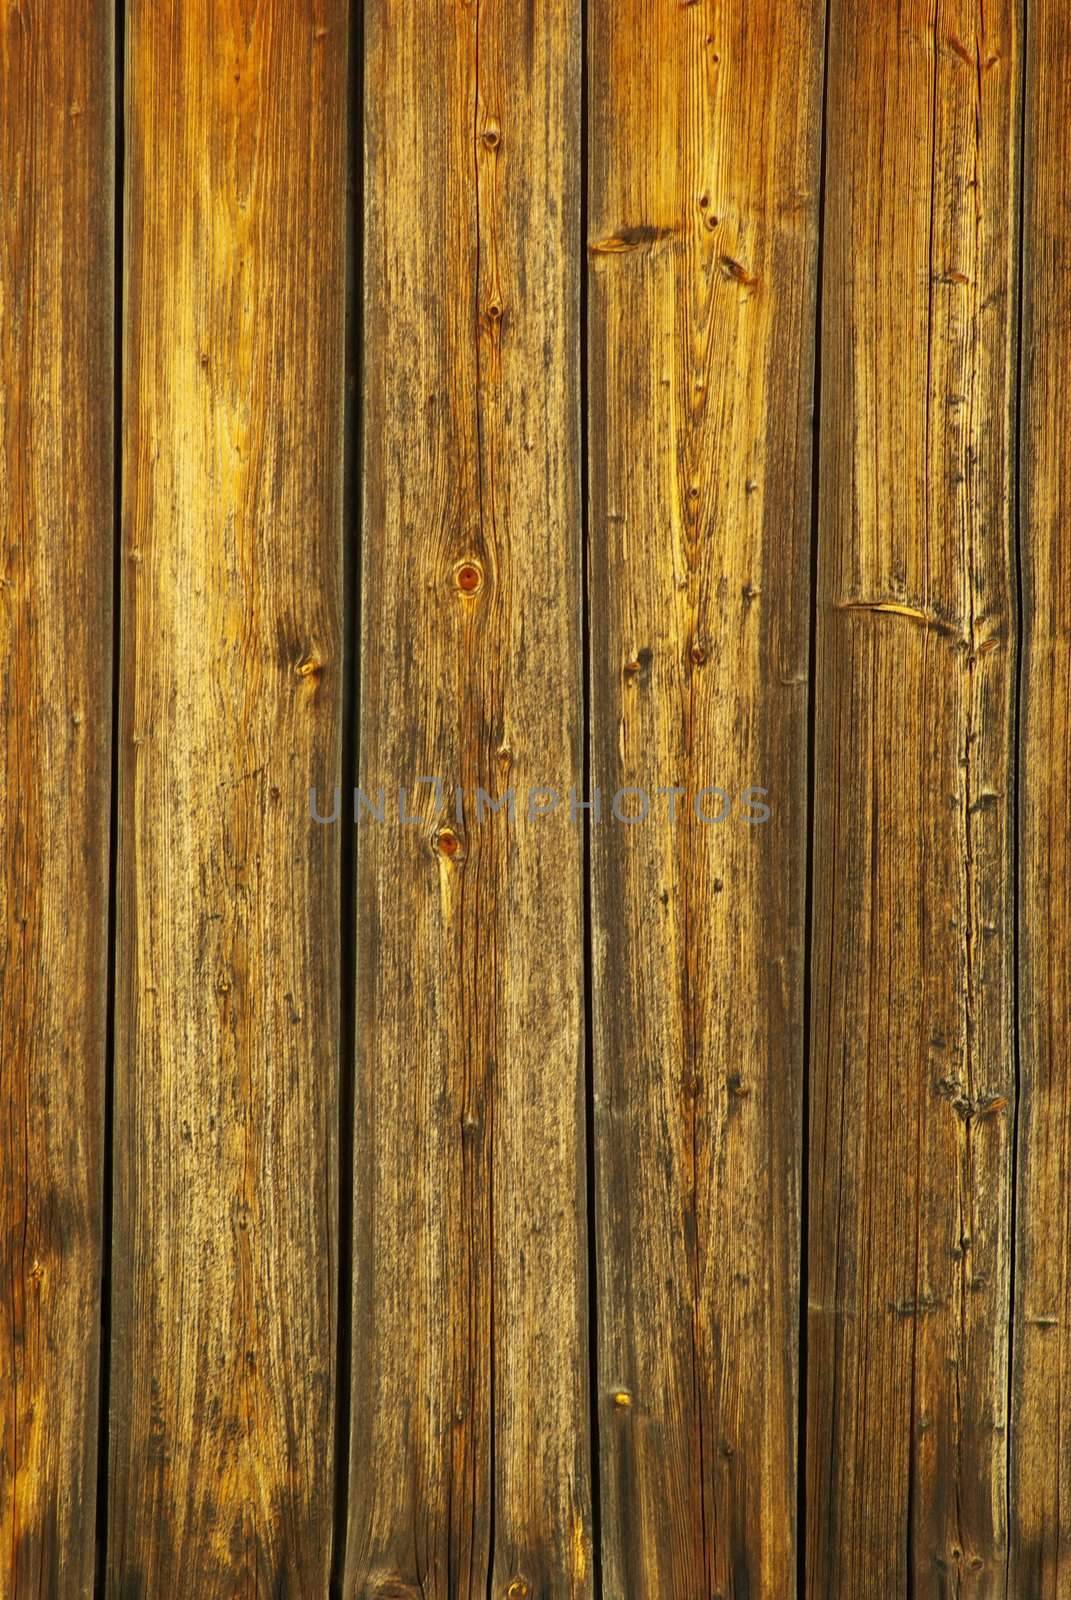  wood texture by Pakhnyushchyy